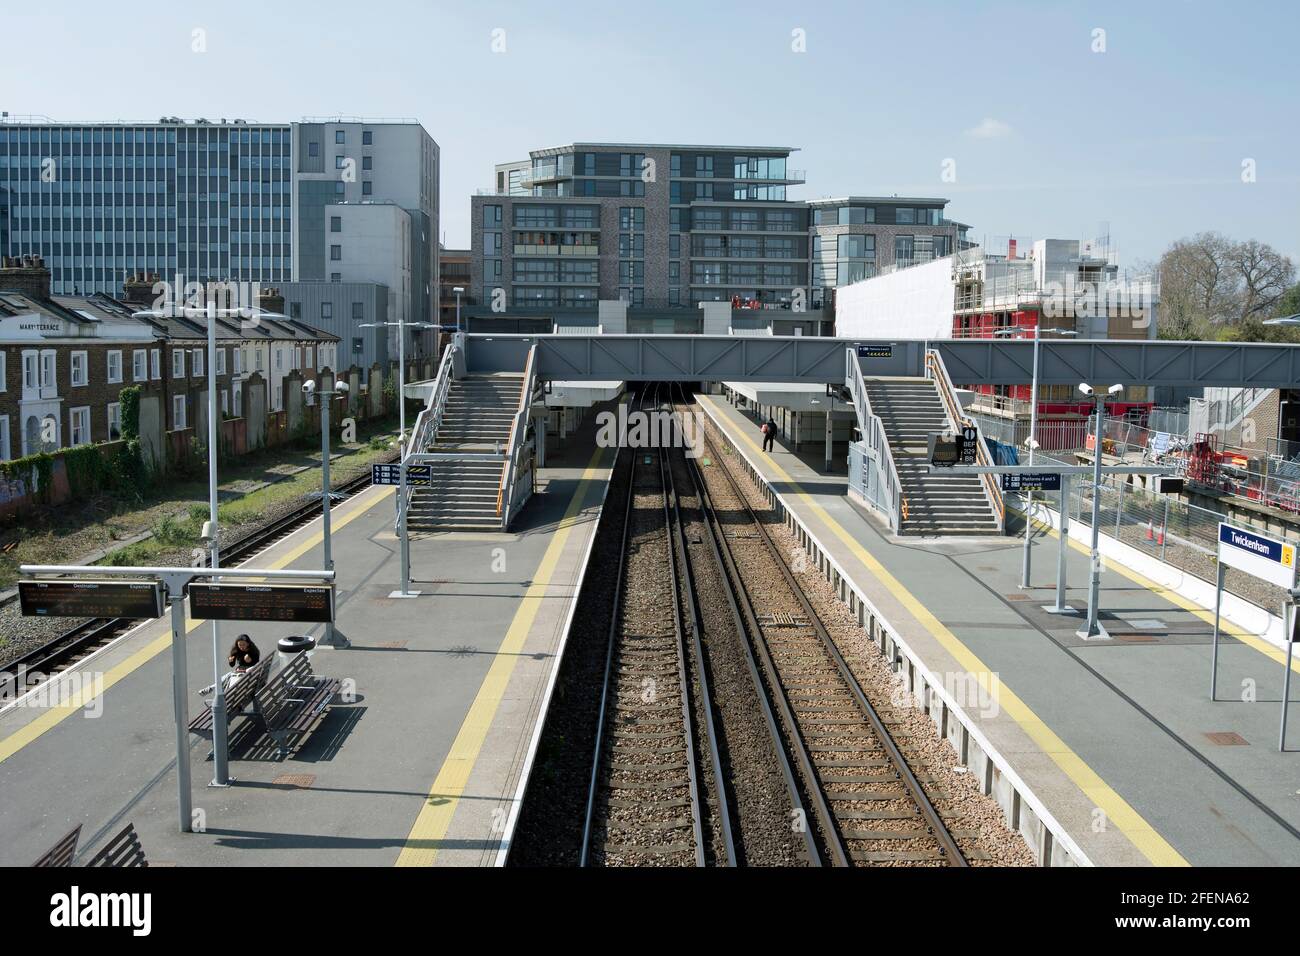 gare de twickenham, twickenham, middlesex, sans train et peu de passagers Banque D'Images